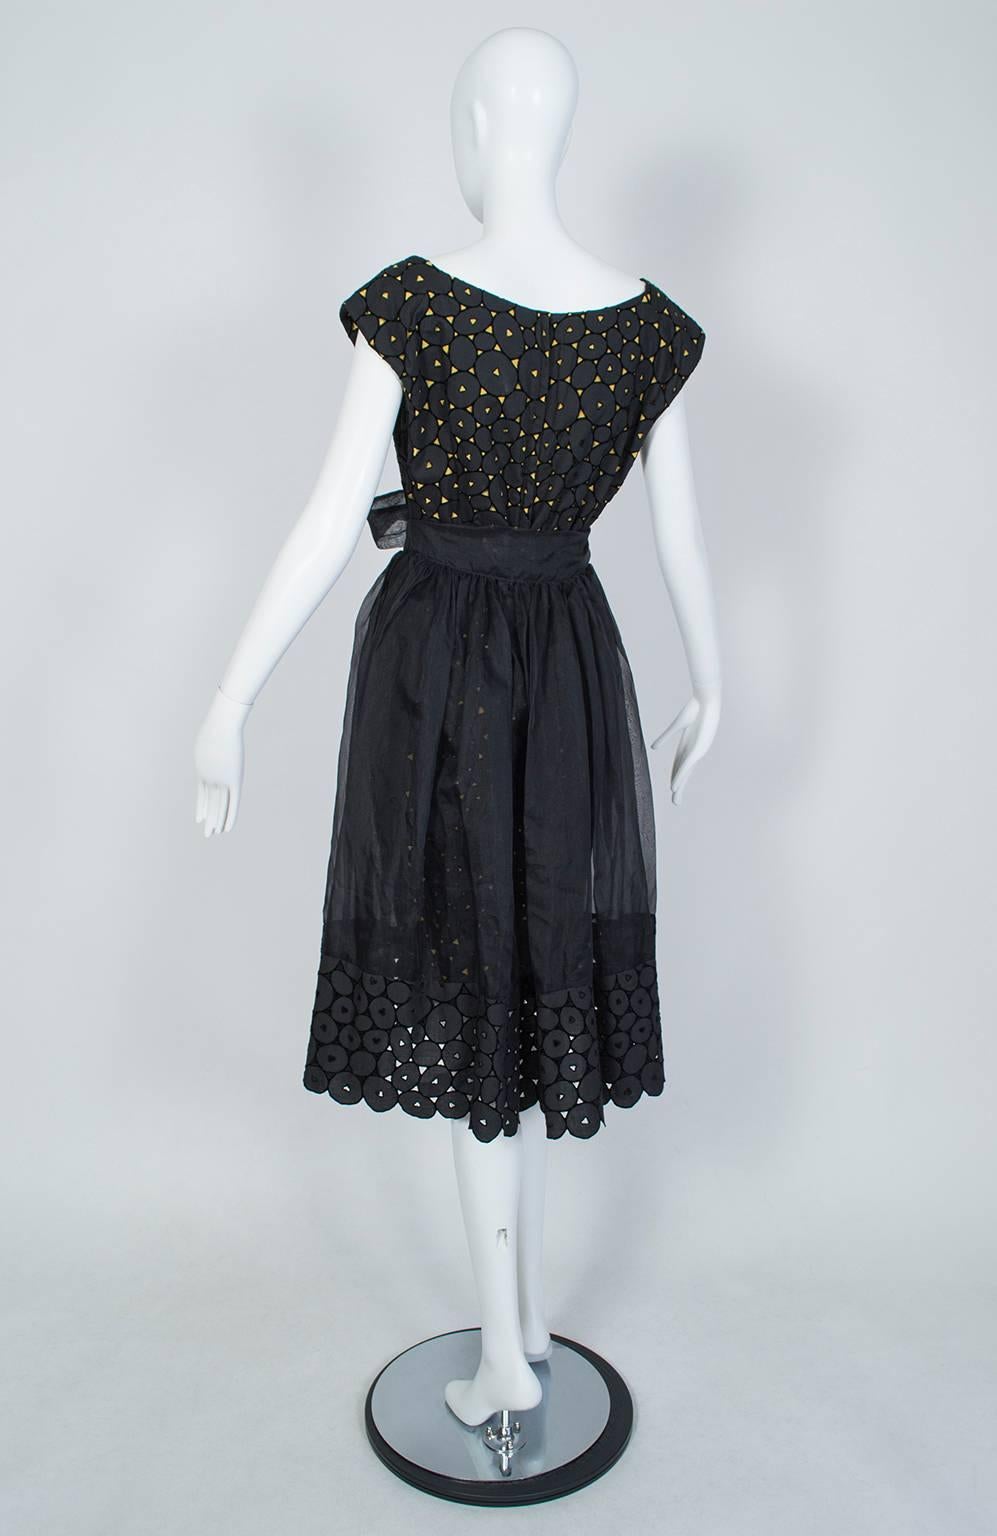 Women's Black and Gold Eyelet Shorts Romper with Sheer Hostess Overskirt - Medium, 1950s